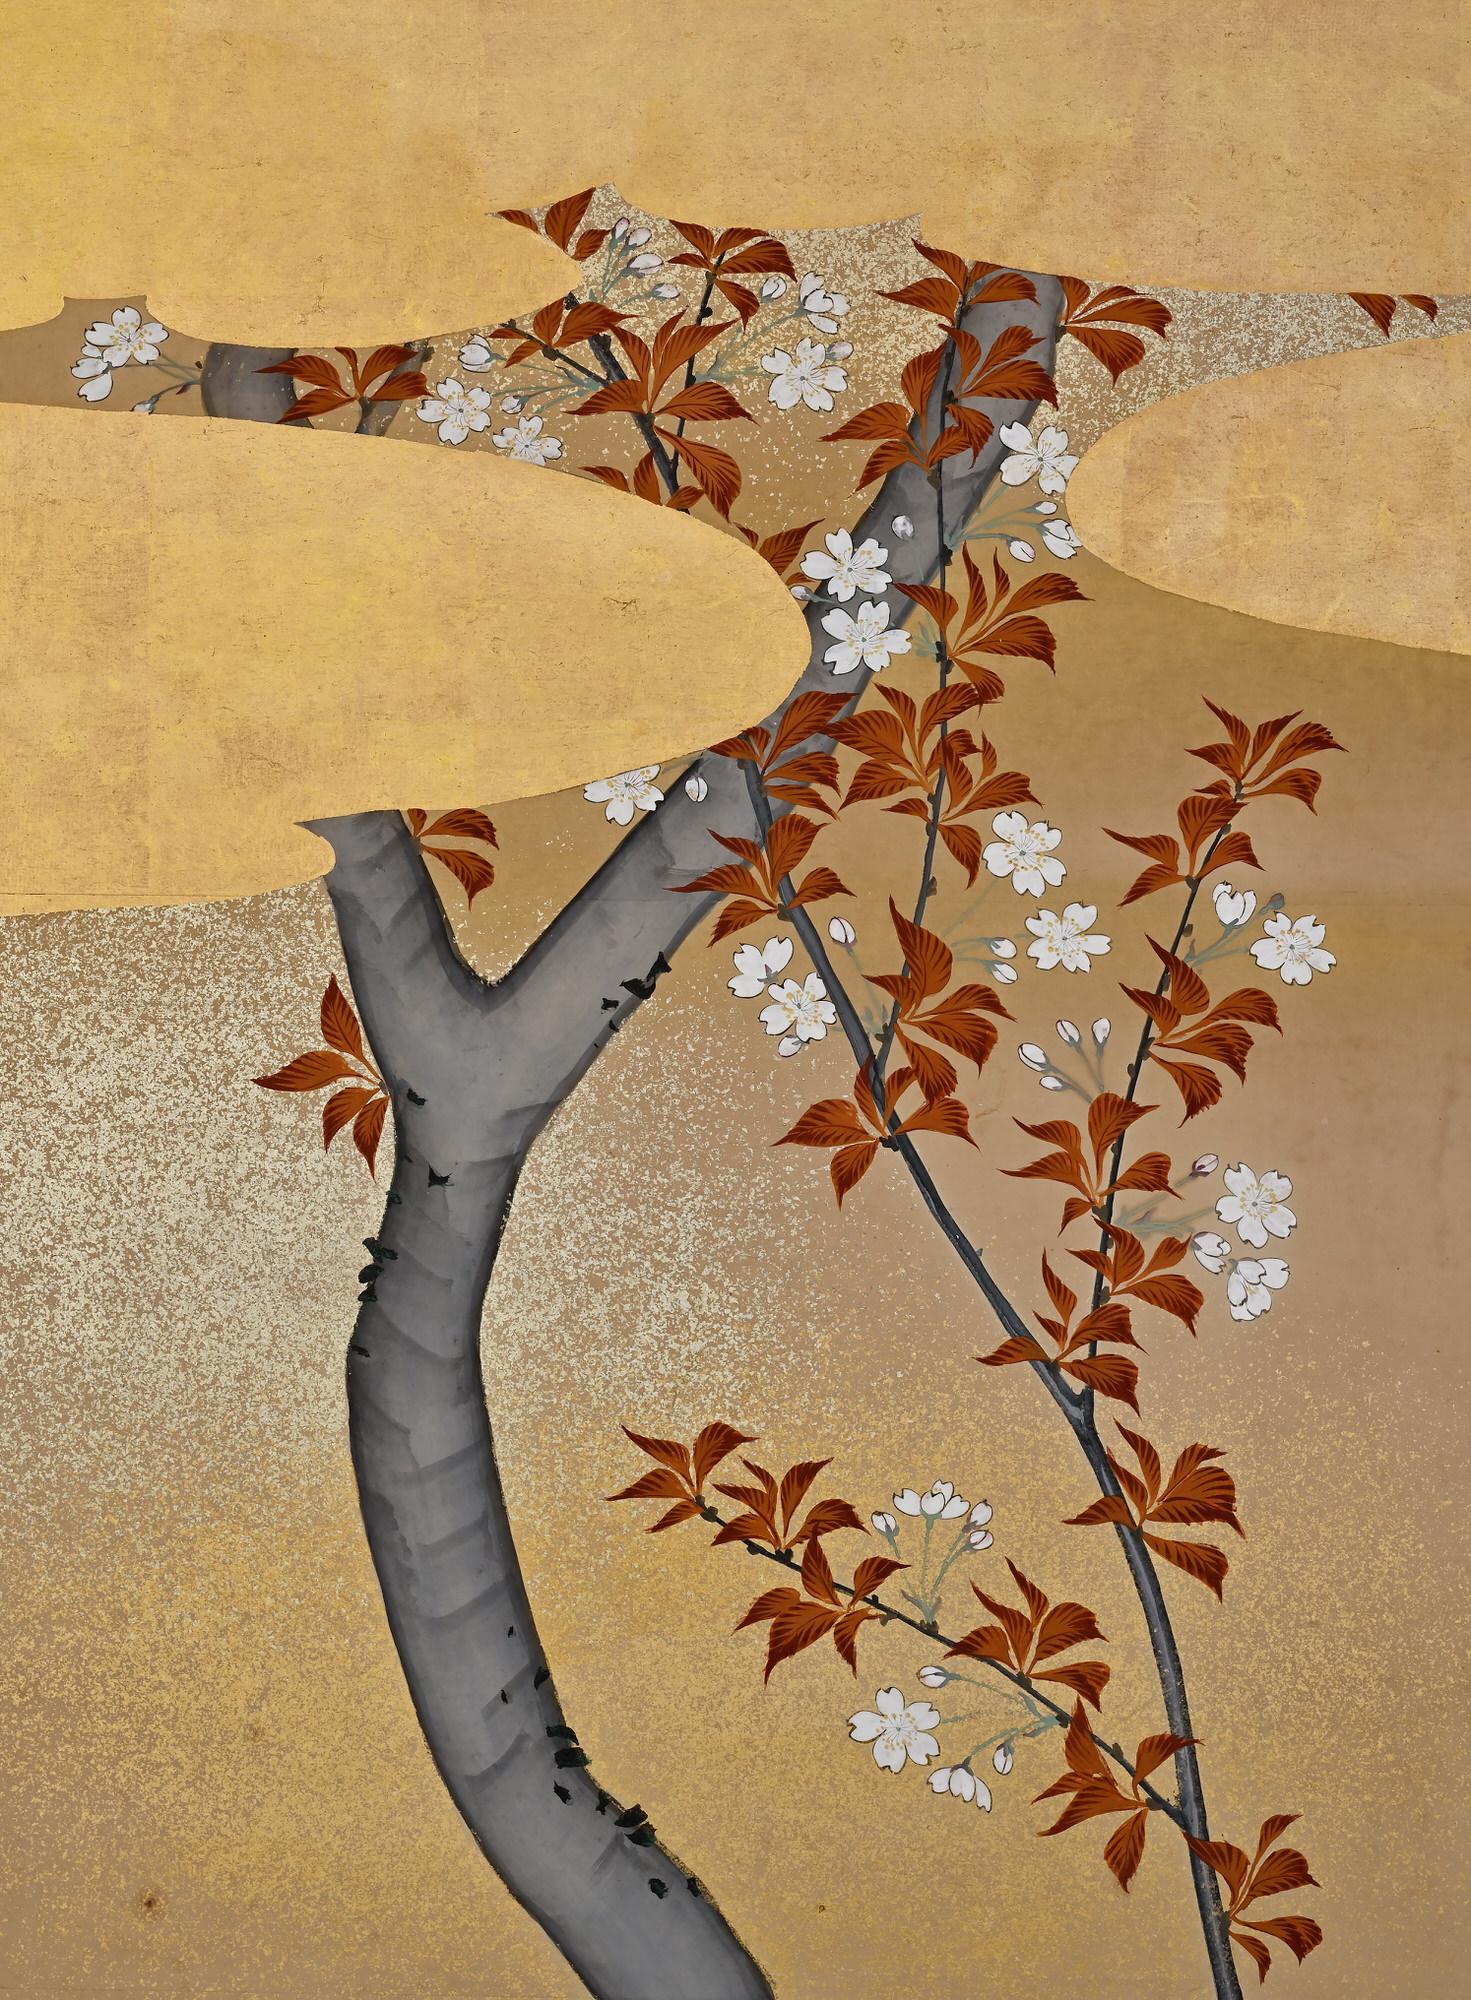 Mori Tetsuzan (1775-1841)

Fasane und Kirschblüten

Zweifacher japanischer Bildschirm. Tusche, Farbe, Gofun, Gold und Silber auf Papier.

Ein zweifacher japanischer Vogel- und Blumenschirm des Künstlers Mori Tetsuzan aus dem 19. Jahrhundert. Die